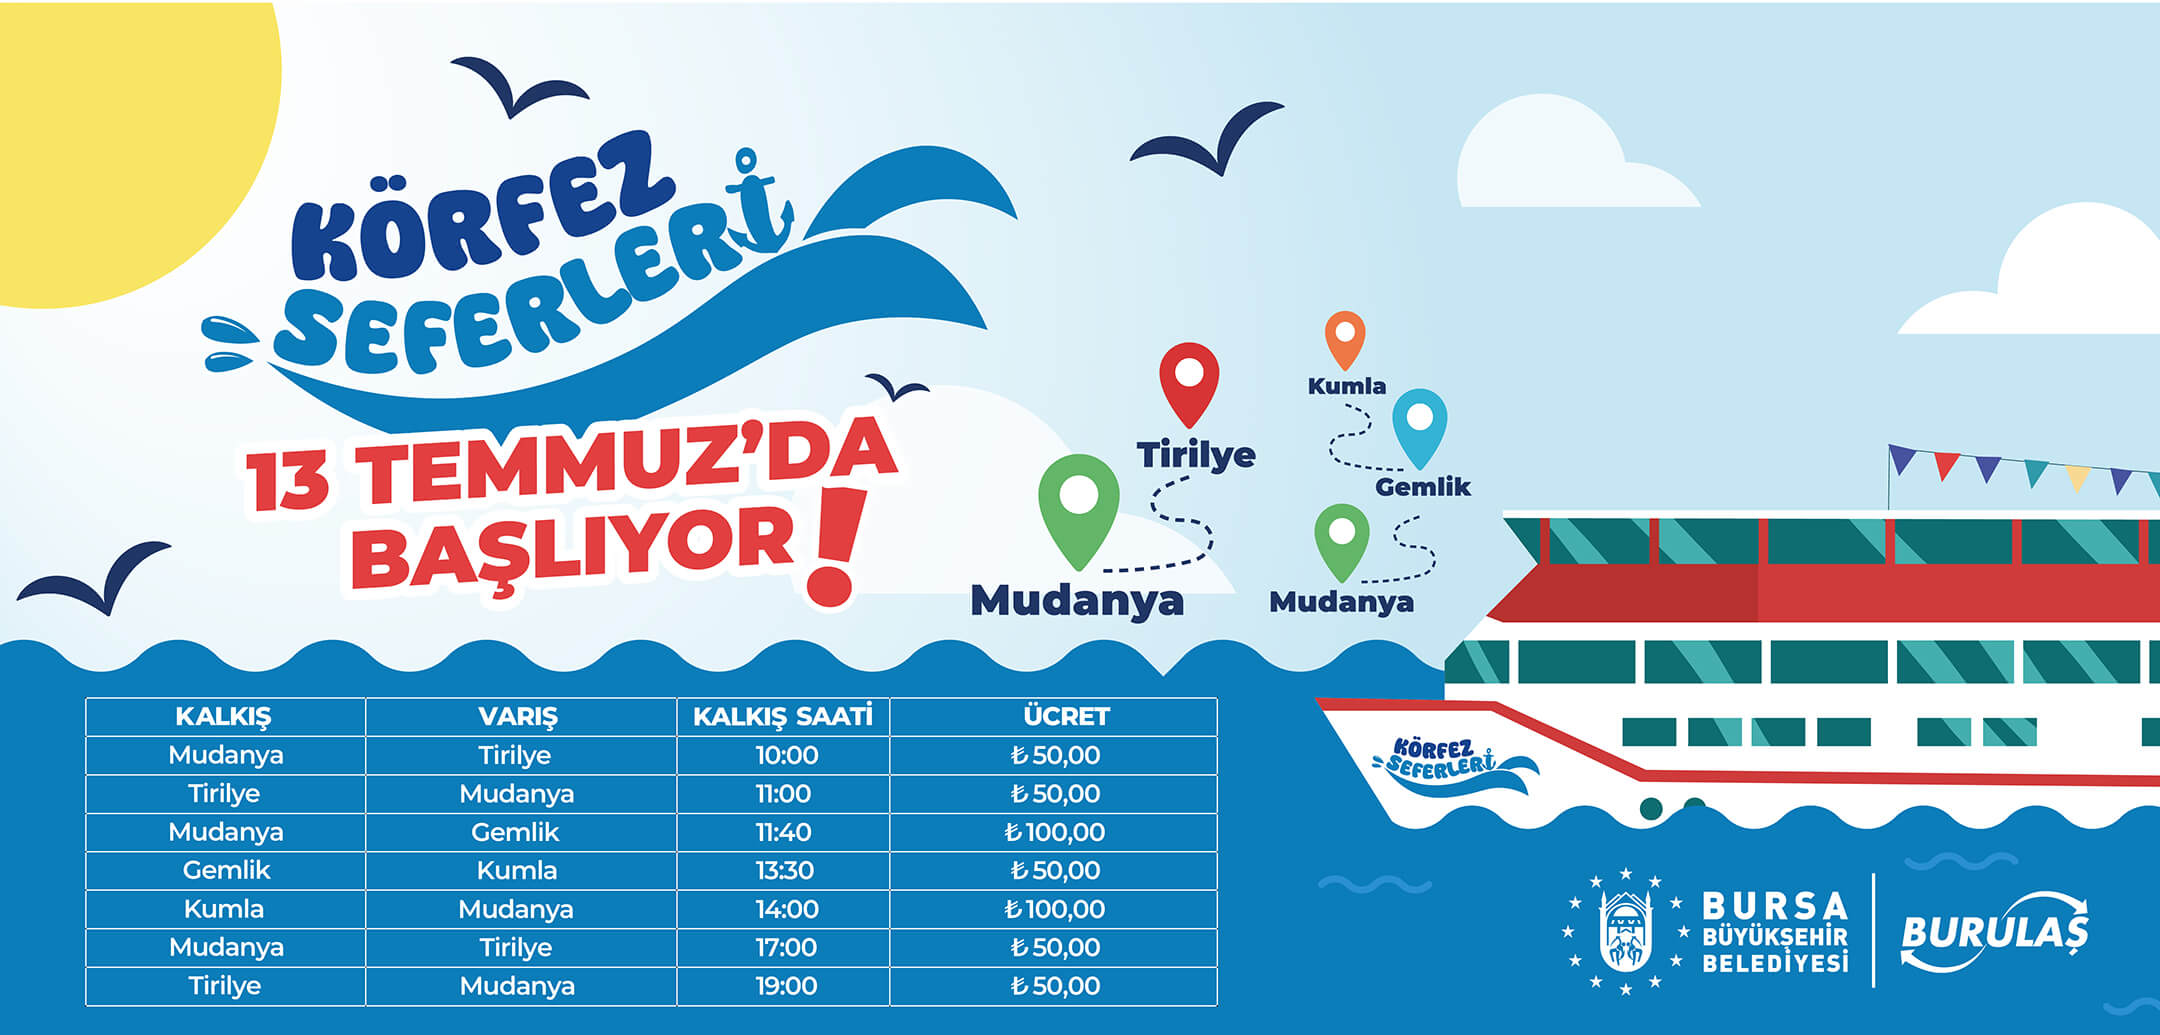 Körfez Seferleri 13 Temmuz'da Başlıyor Bursa Büyükşehir Belediye Başkanı Sayın Mustafa BOZBEY’in seçim vaatlerinden biri olan Körfez Seferleri, artık gerçeğe dönüşüyor!   458 kişi kapasiteli, açık ve kapalı alanı bulunan modern gezi teknesiyle başlayacak olan seferlerimiz, Bursa, Mudanya ve Gemlik halkının uzun zamandır beklediği bir...